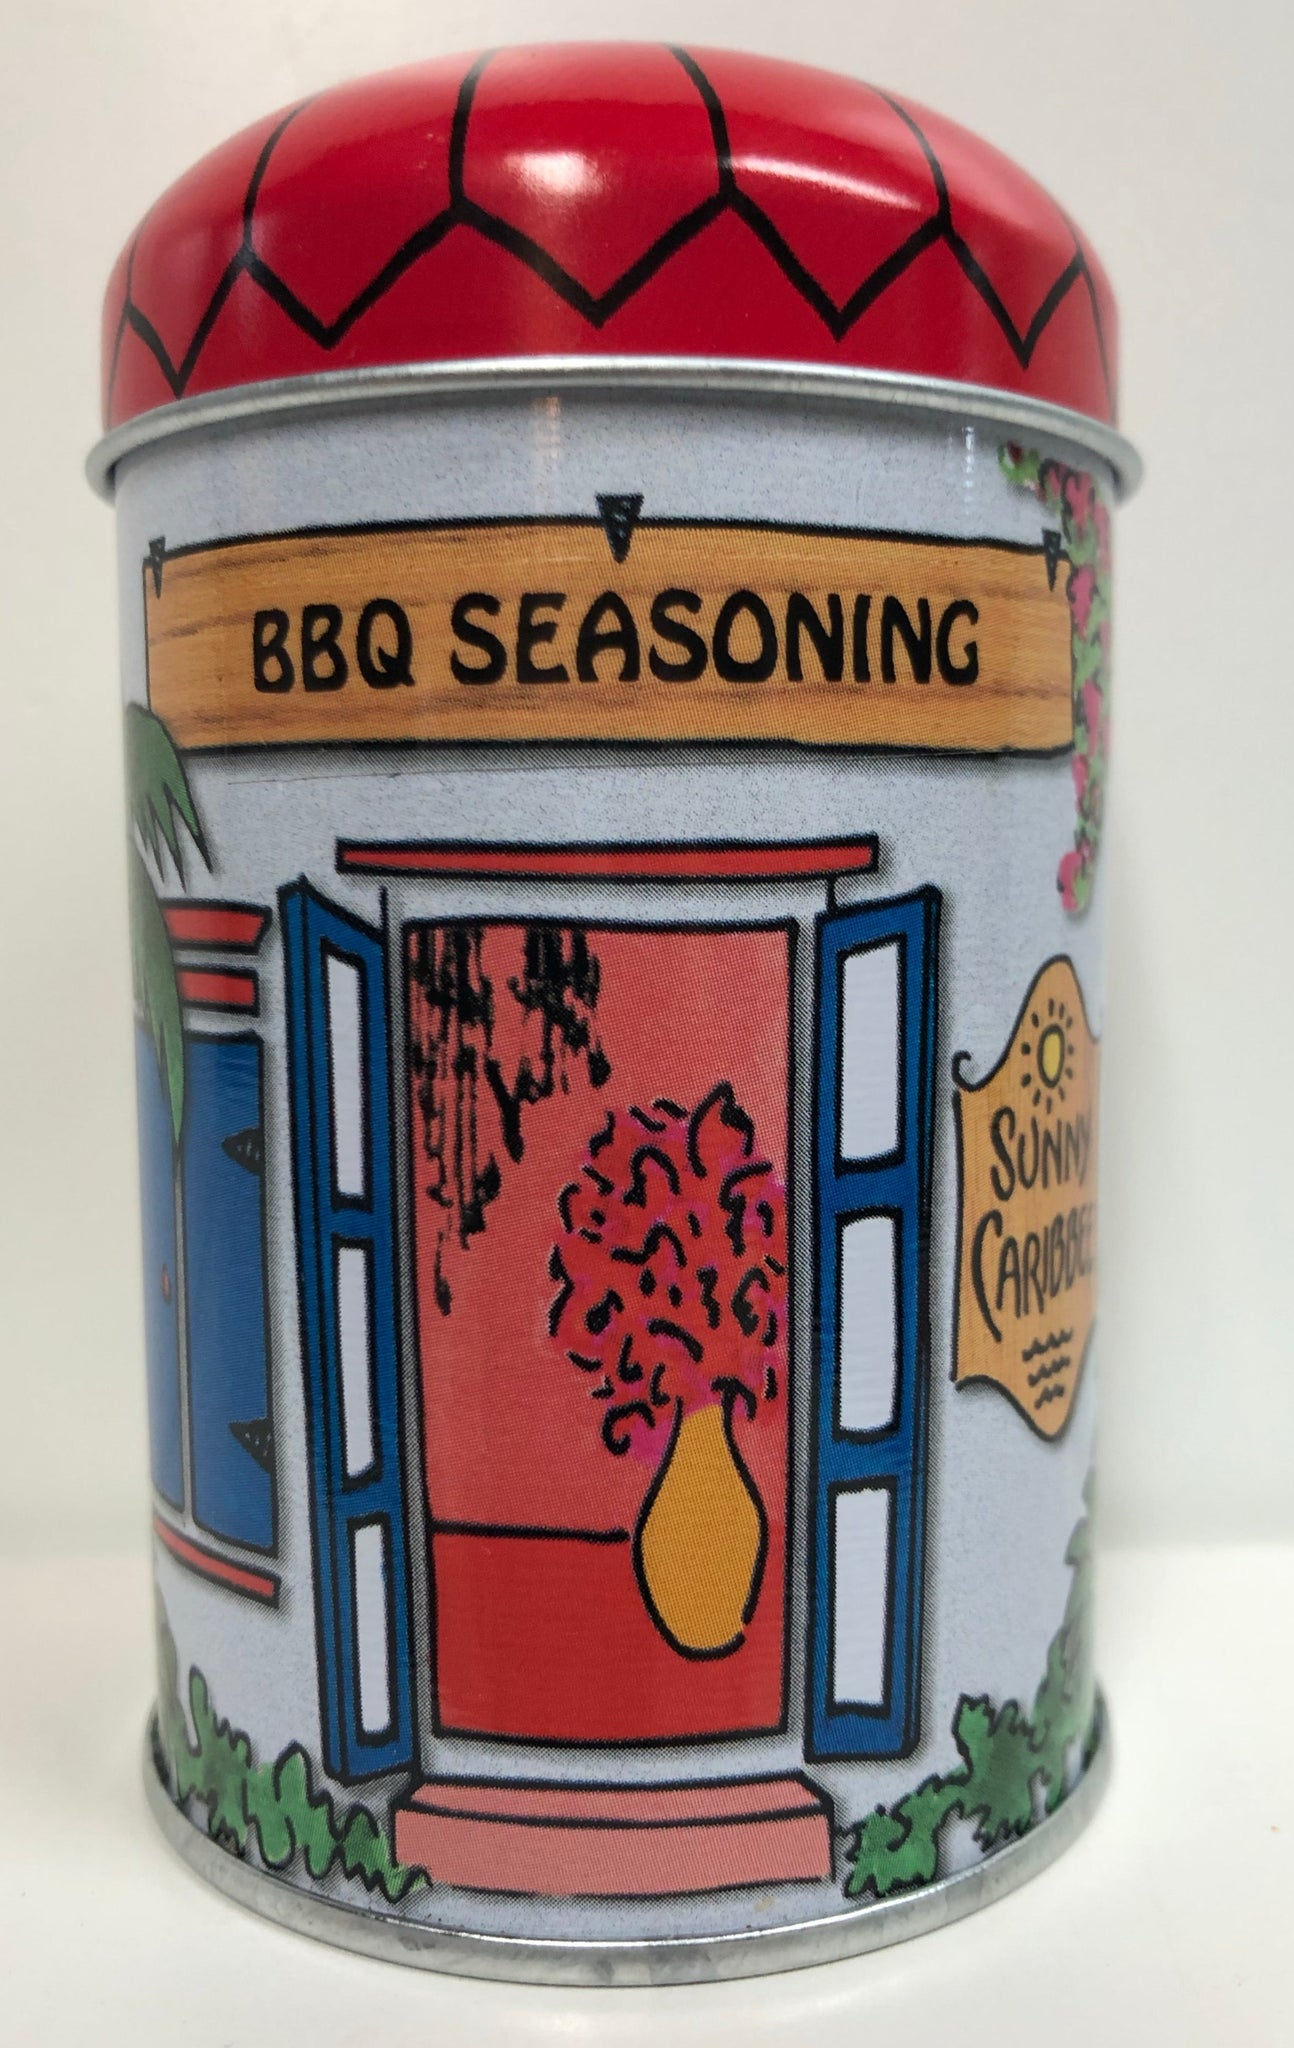 BBQ Seasoning Tin from Sunny Caribbee